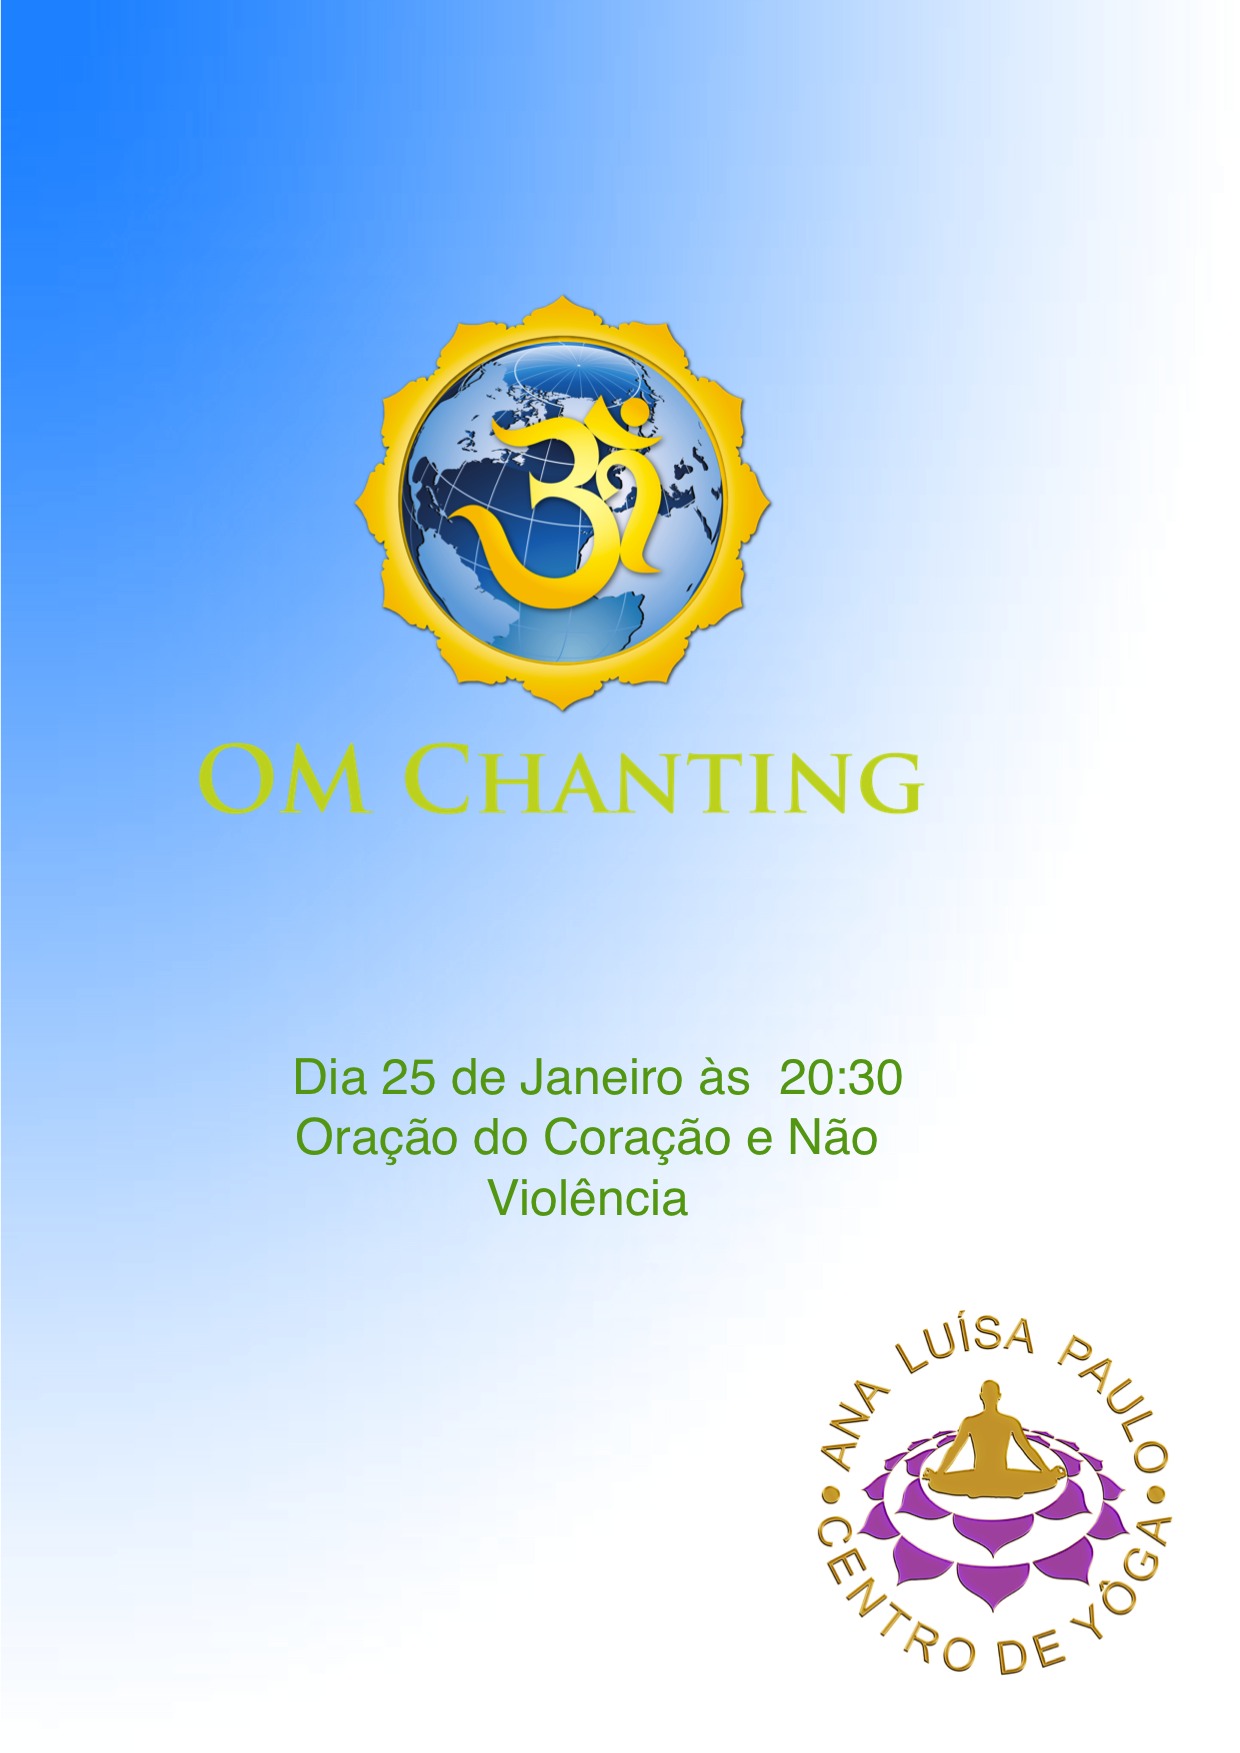 Om Chanting Lua cheia dia 25 de Janeiro pelas 20:30